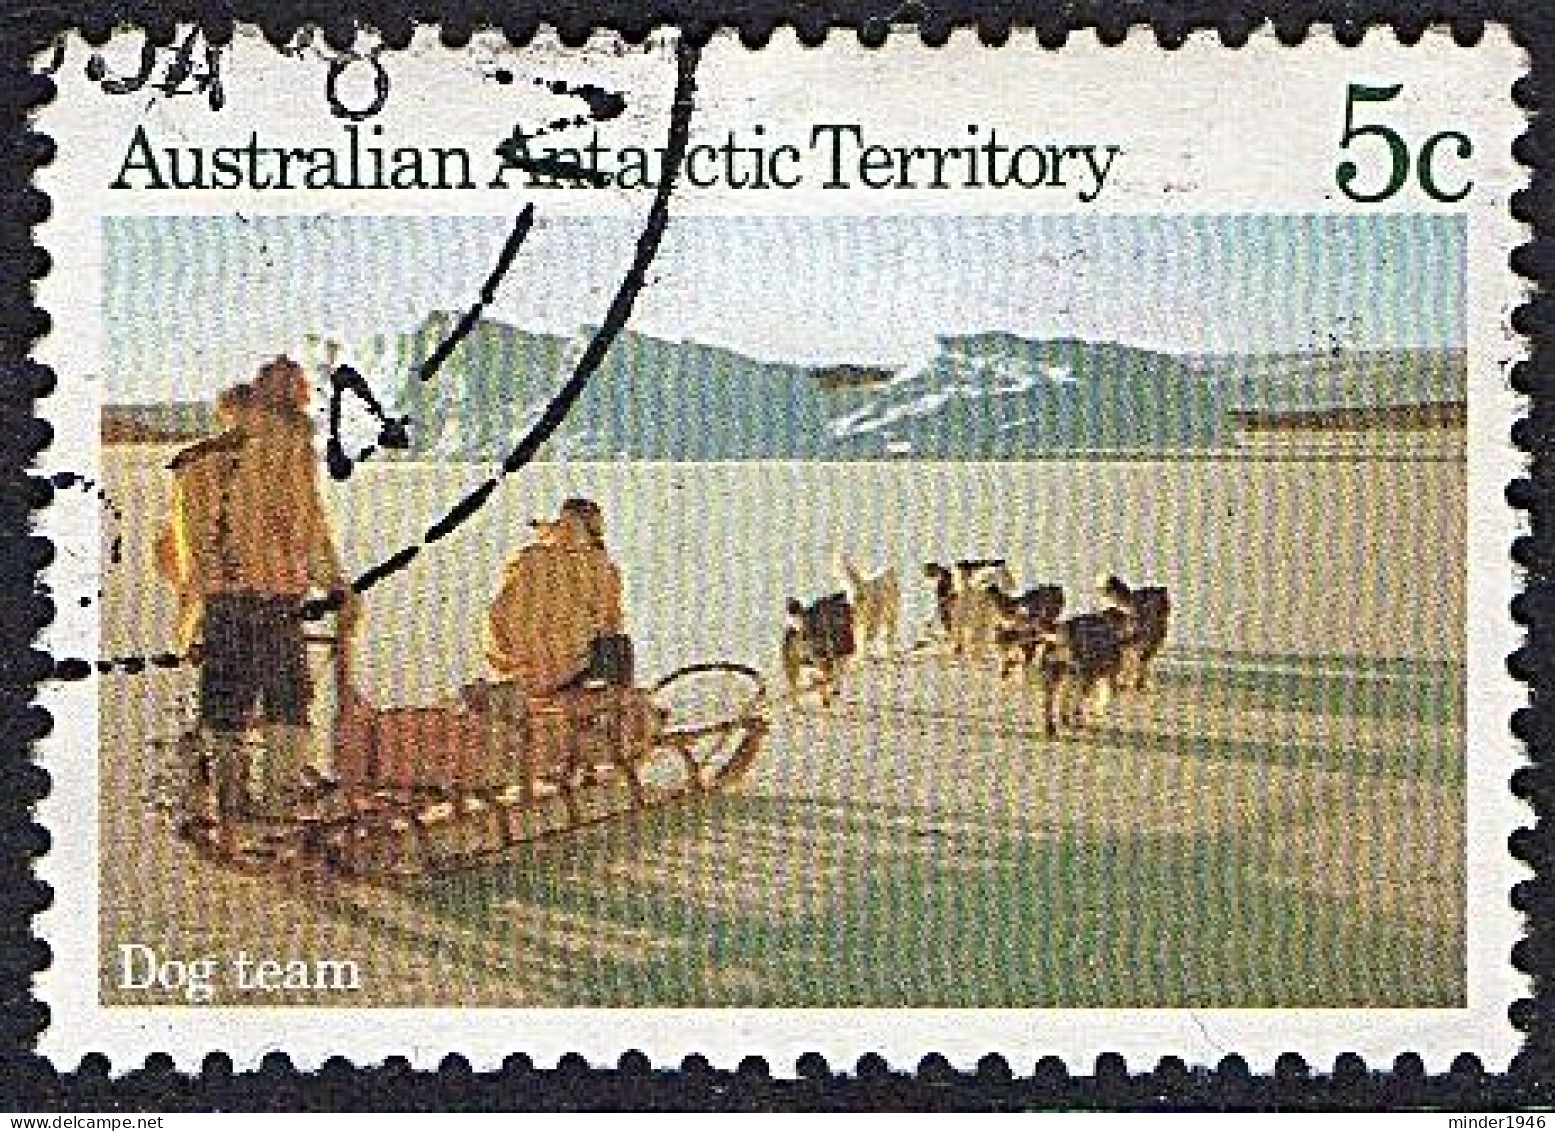 AUSTRALIAN ANTARCTIC TERRITORY (AAT) 1984 QEII 5c Multicoloured, Scenes-Dog Team SG64 FU - Gebraucht